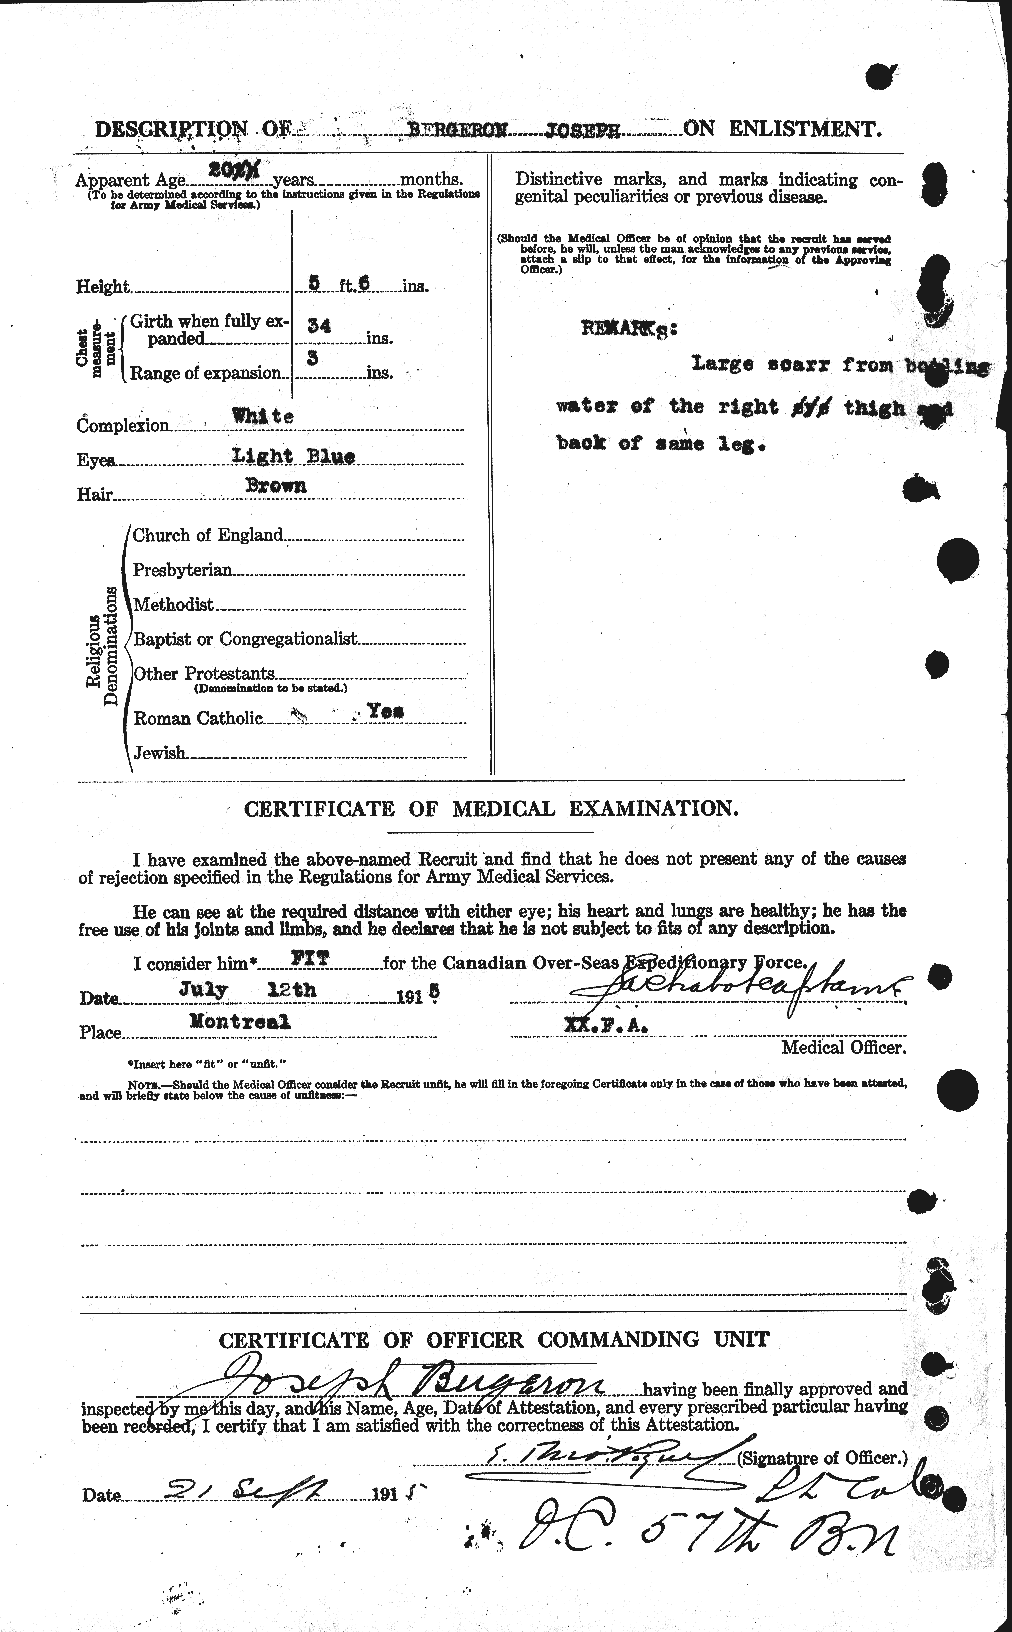 Dossiers du Personnel de la Première Guerre mondiale - CEC 232985b